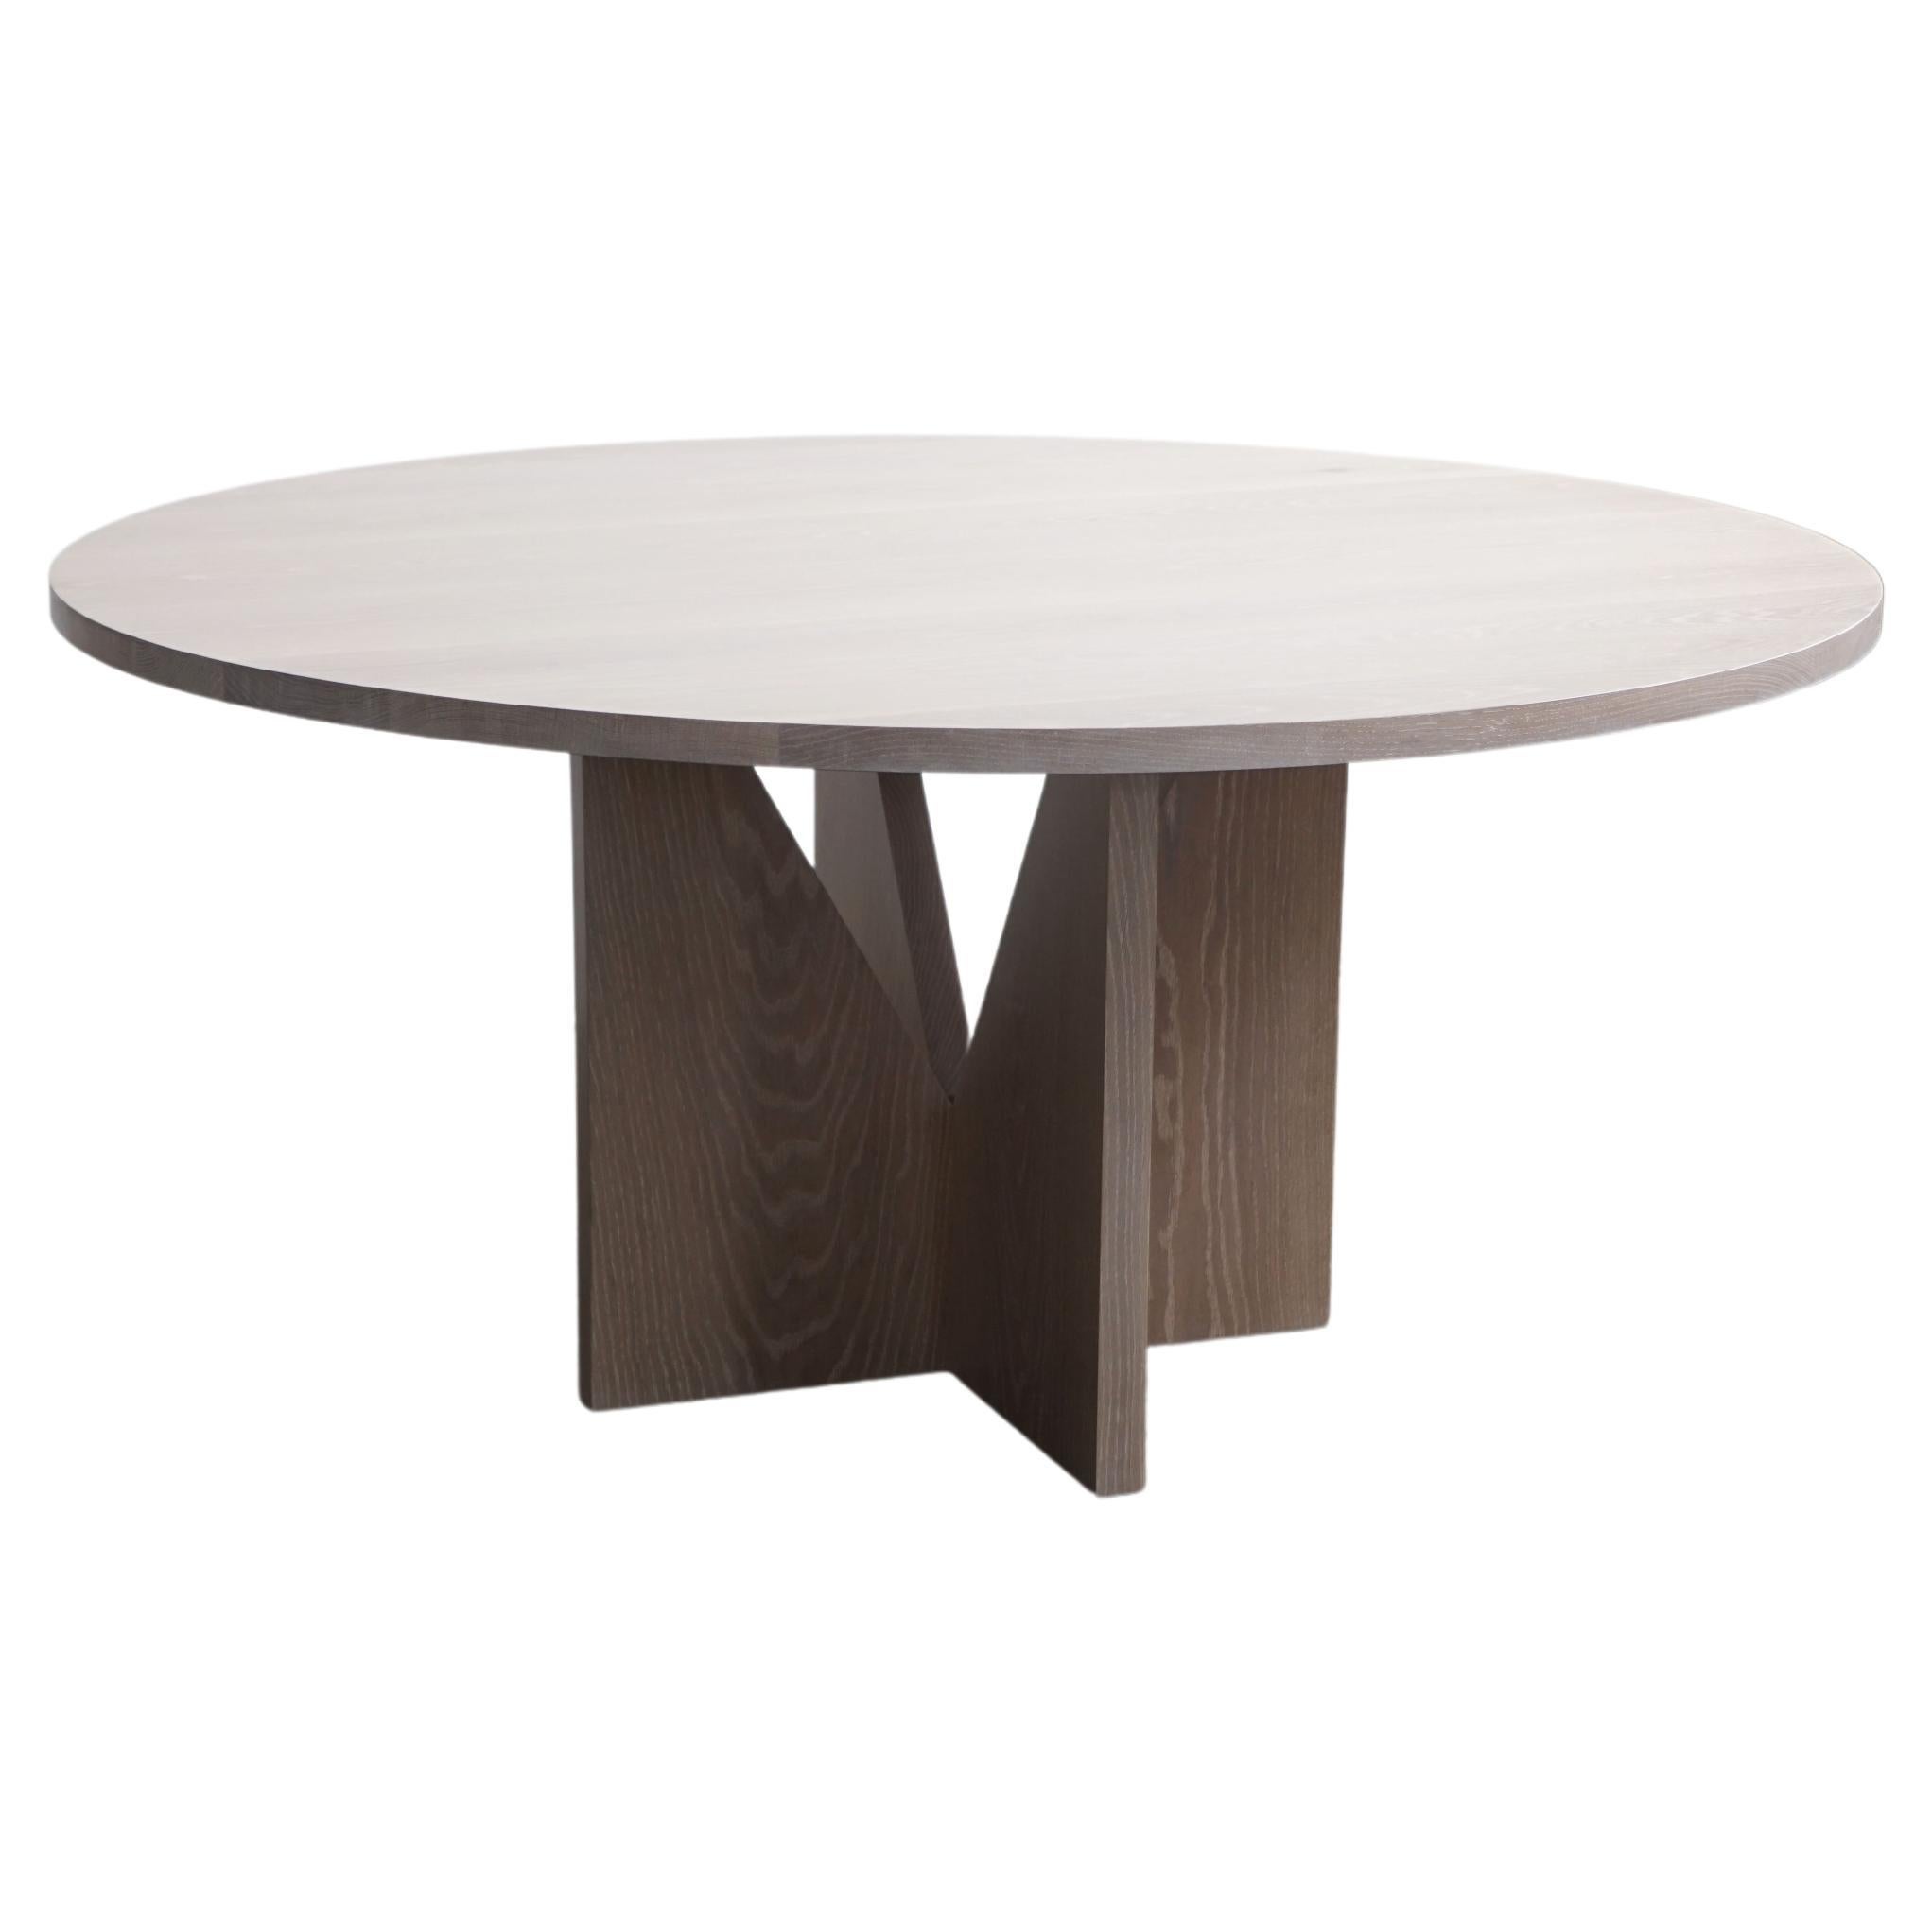 Zeitgenössischer runder Esstisch aus weißem Eichenholz von Last Workshop, minimalistisch